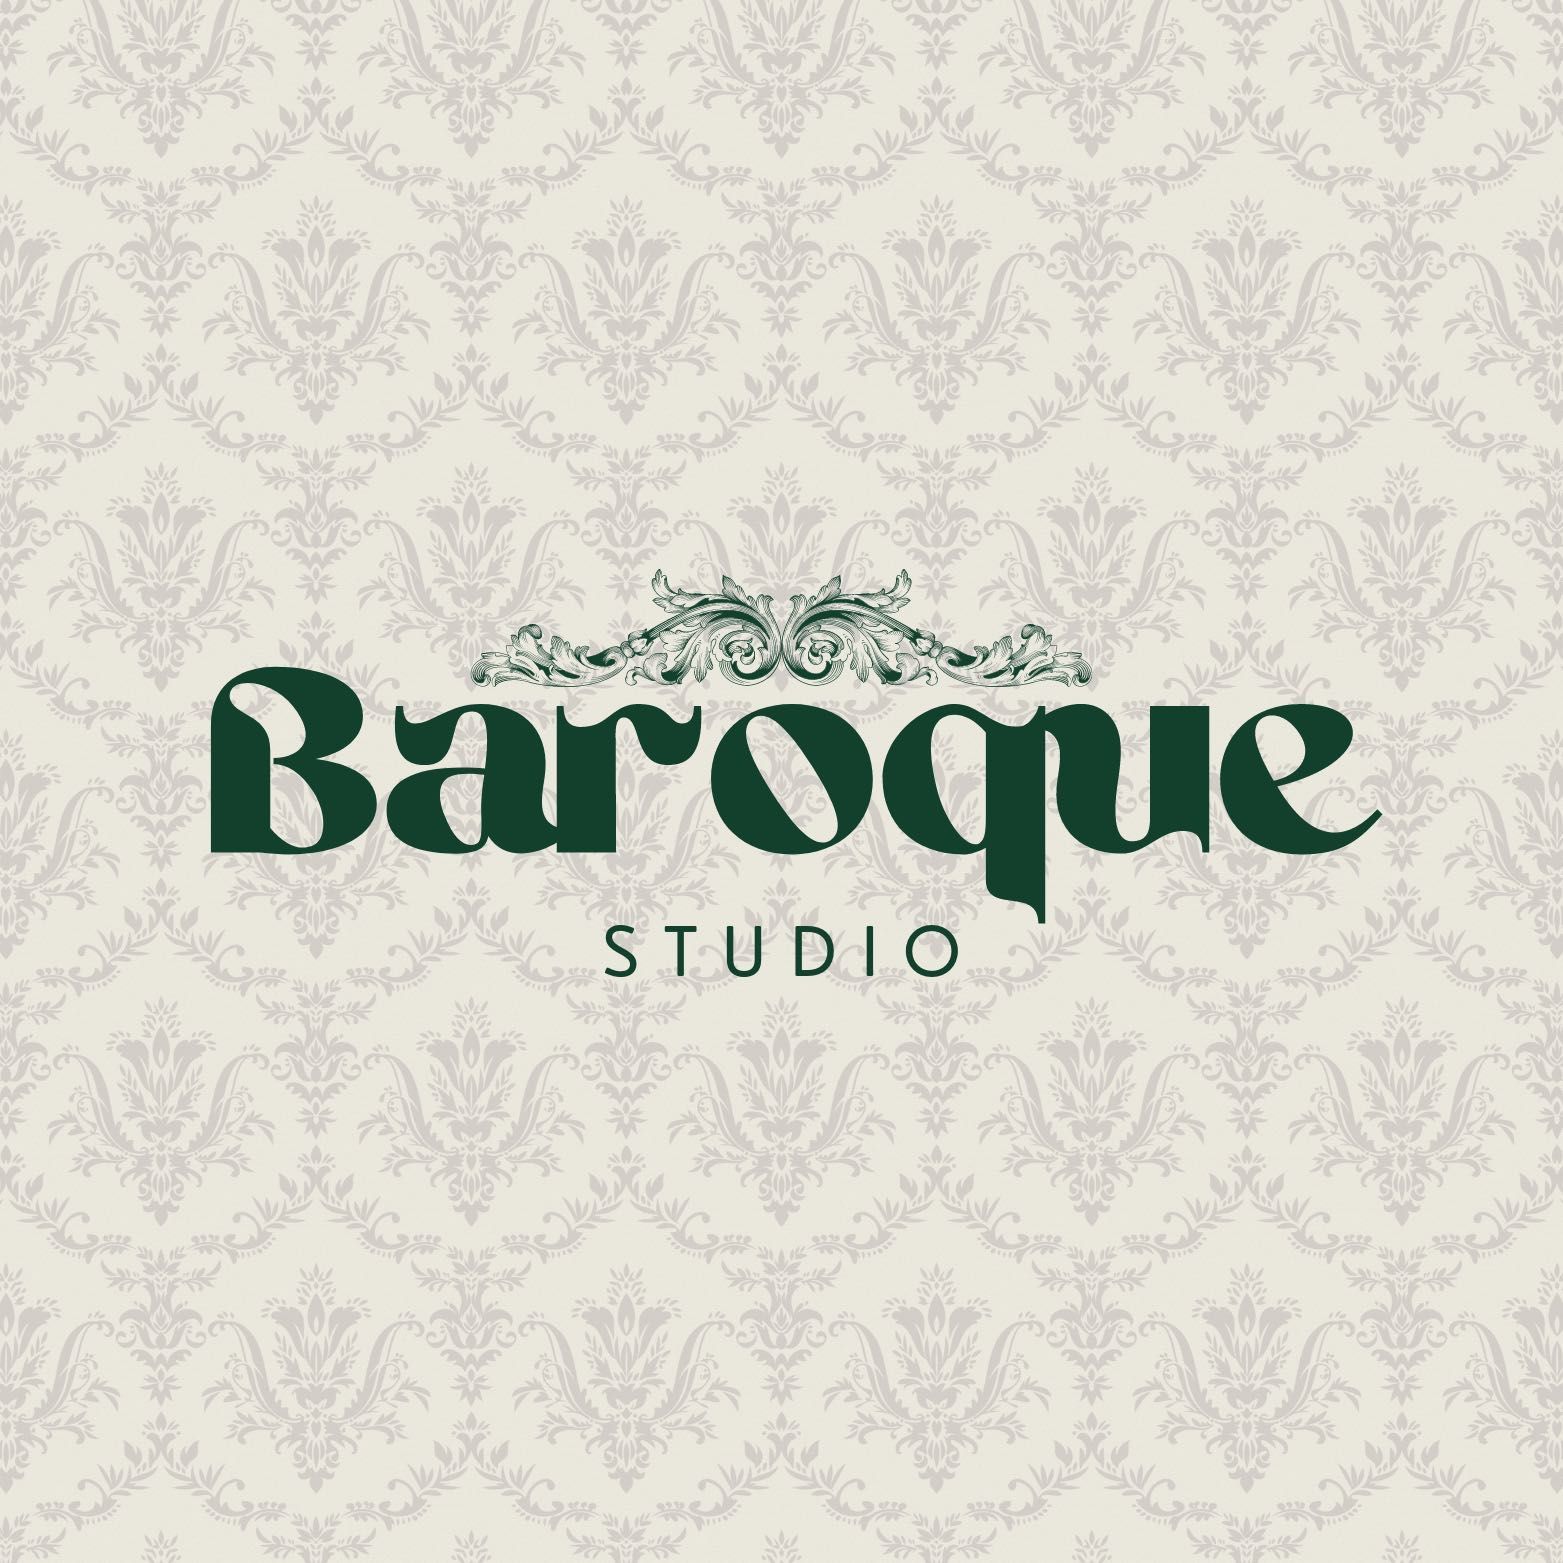 Baroque Studio, 12 Rue de la Canal, 74000, Annecy